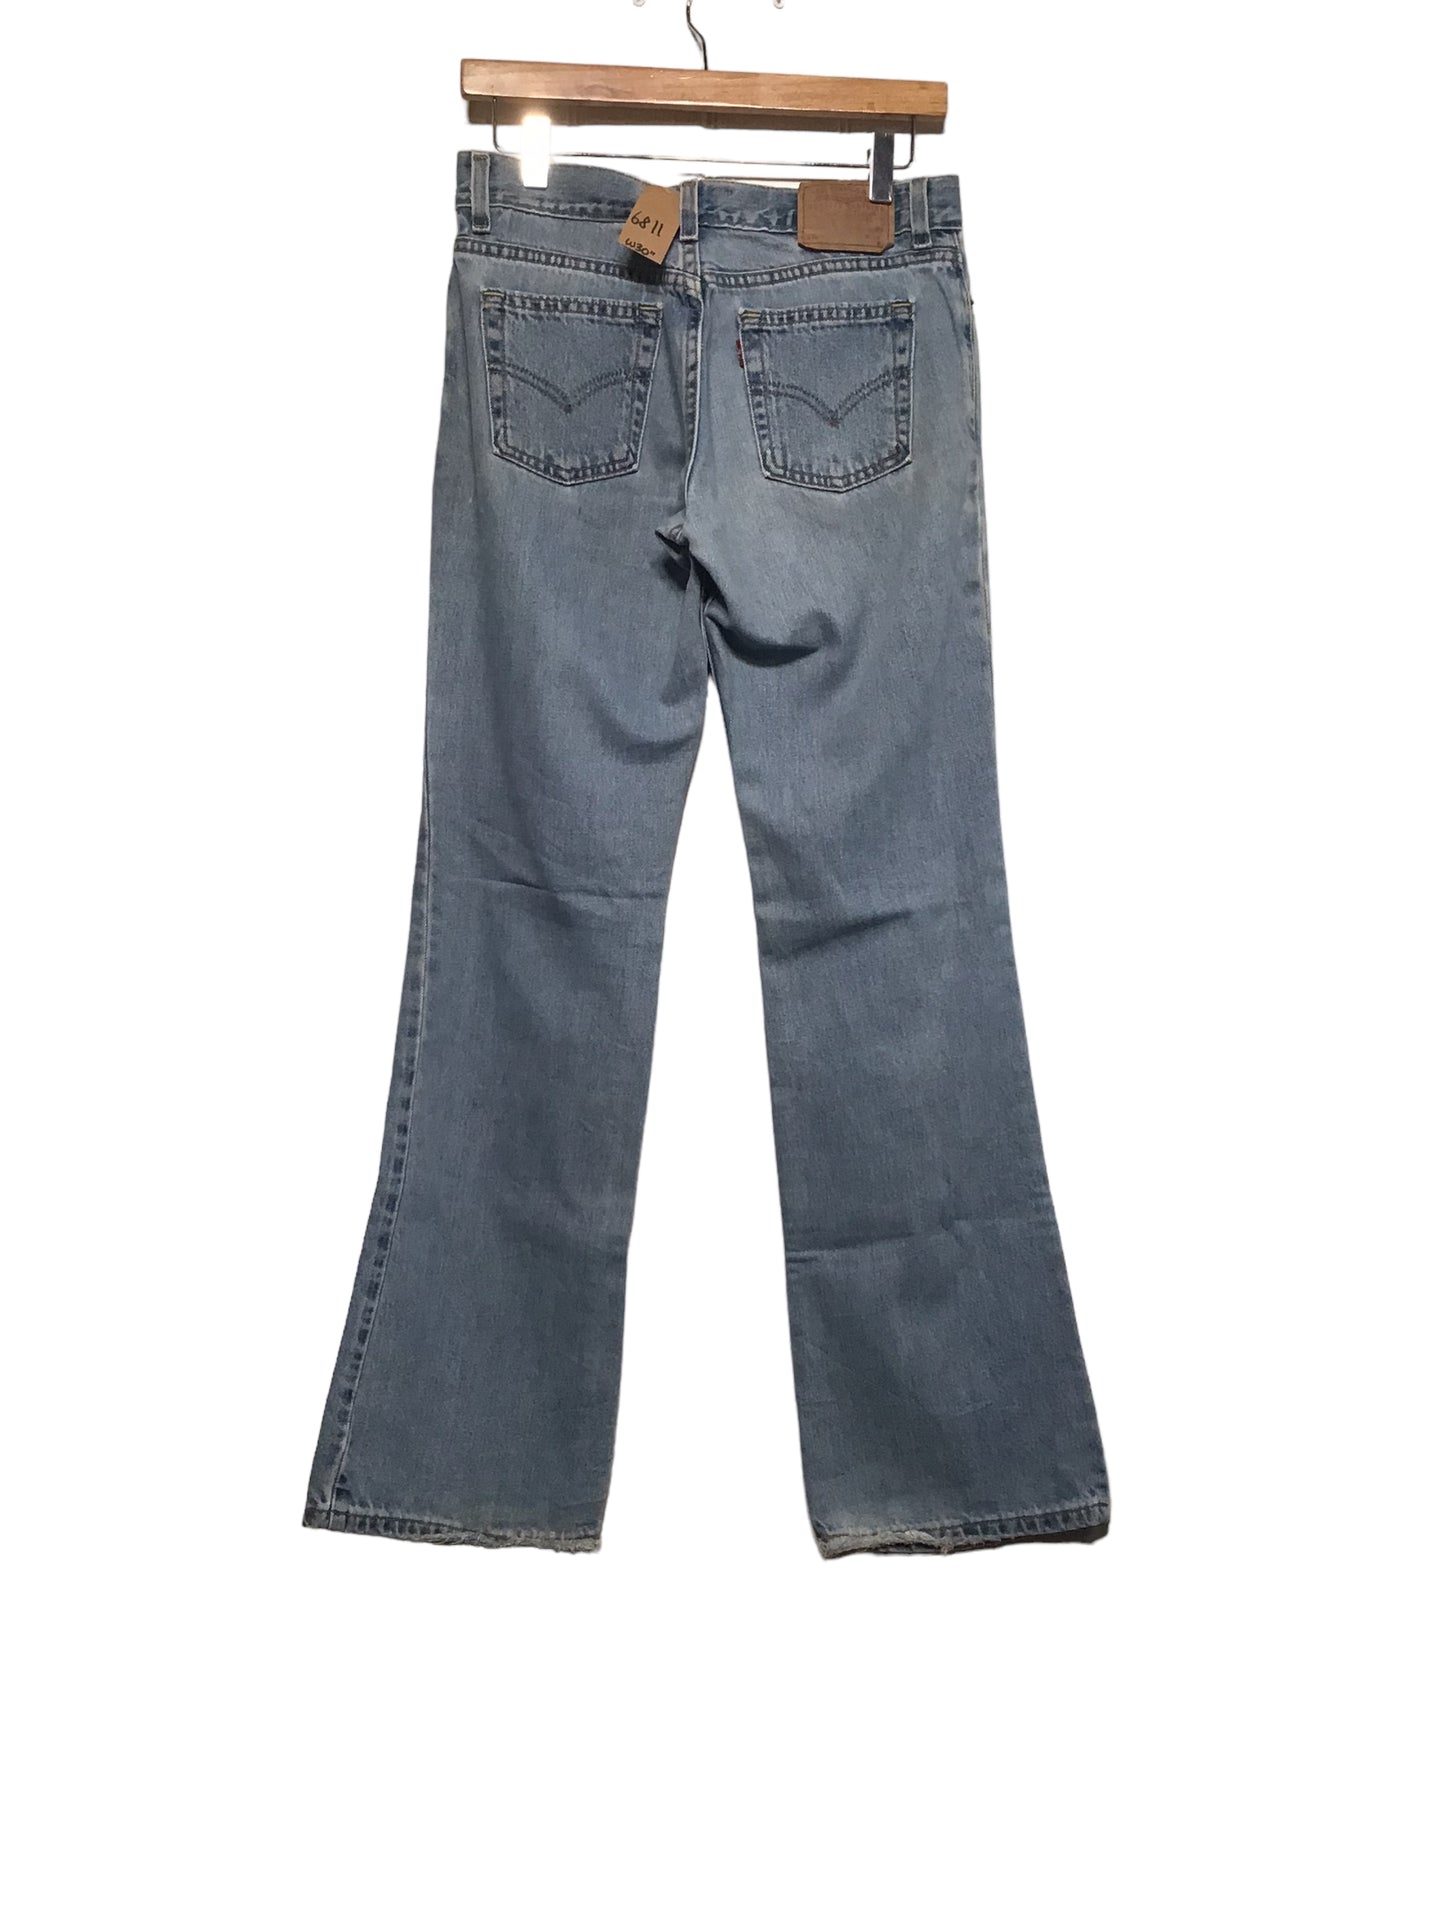 Levi’s 518 Jeans (30x32)